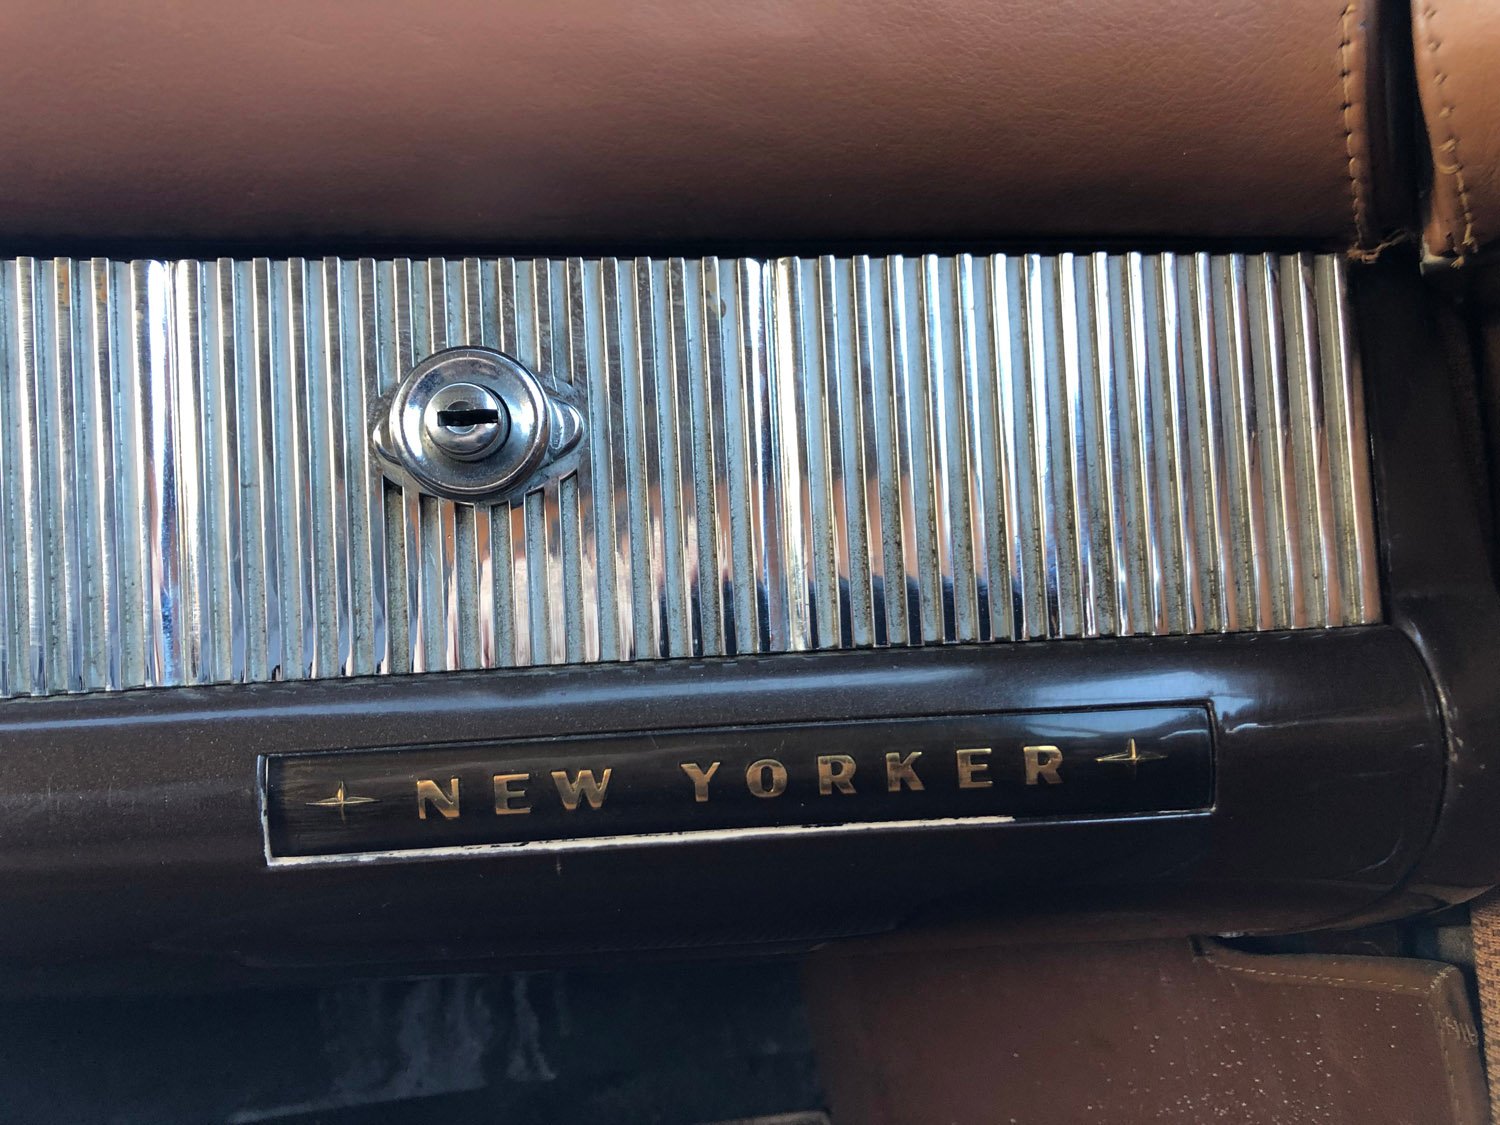 1951 Chrysler New Yorker